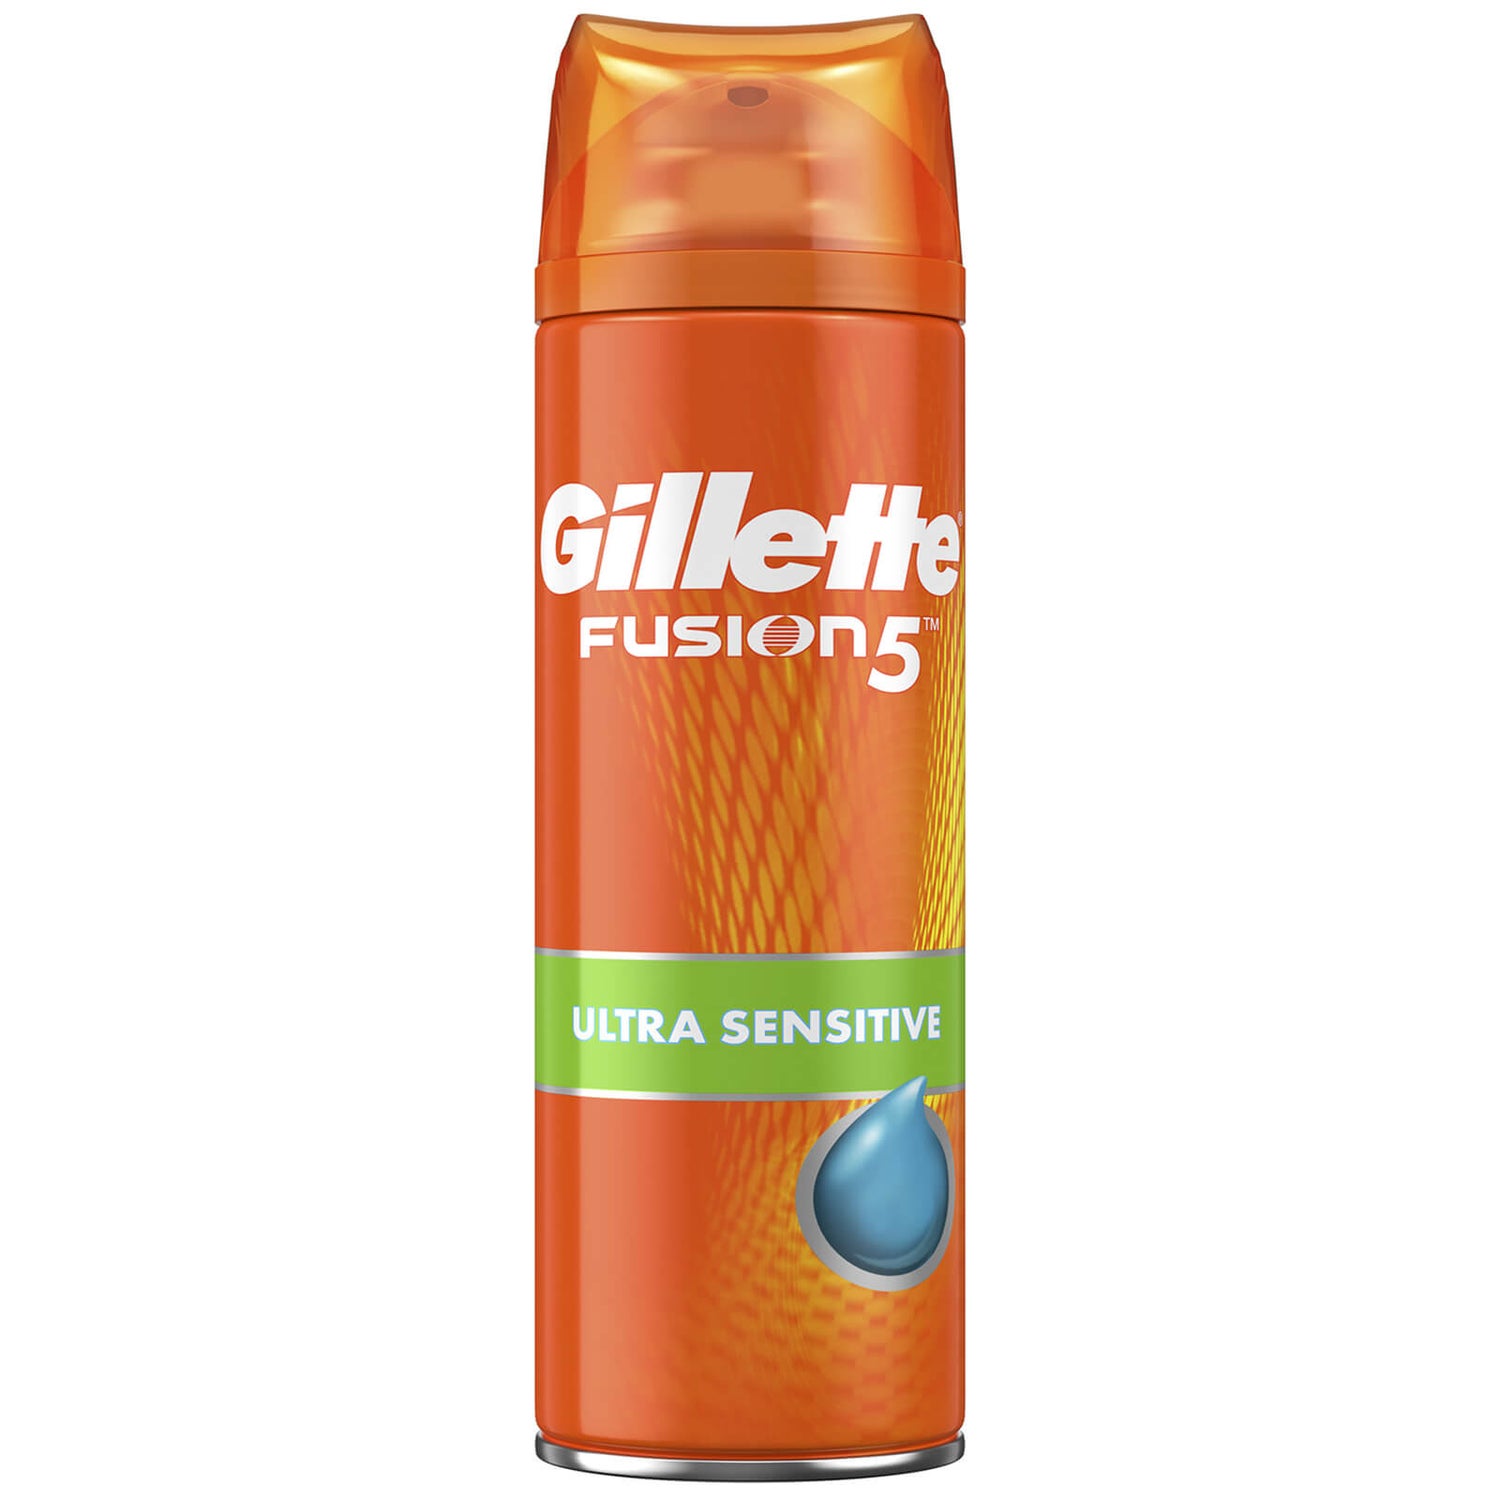 Gillette Fusion5 Hydragel für Empfindliche Haut 200ml